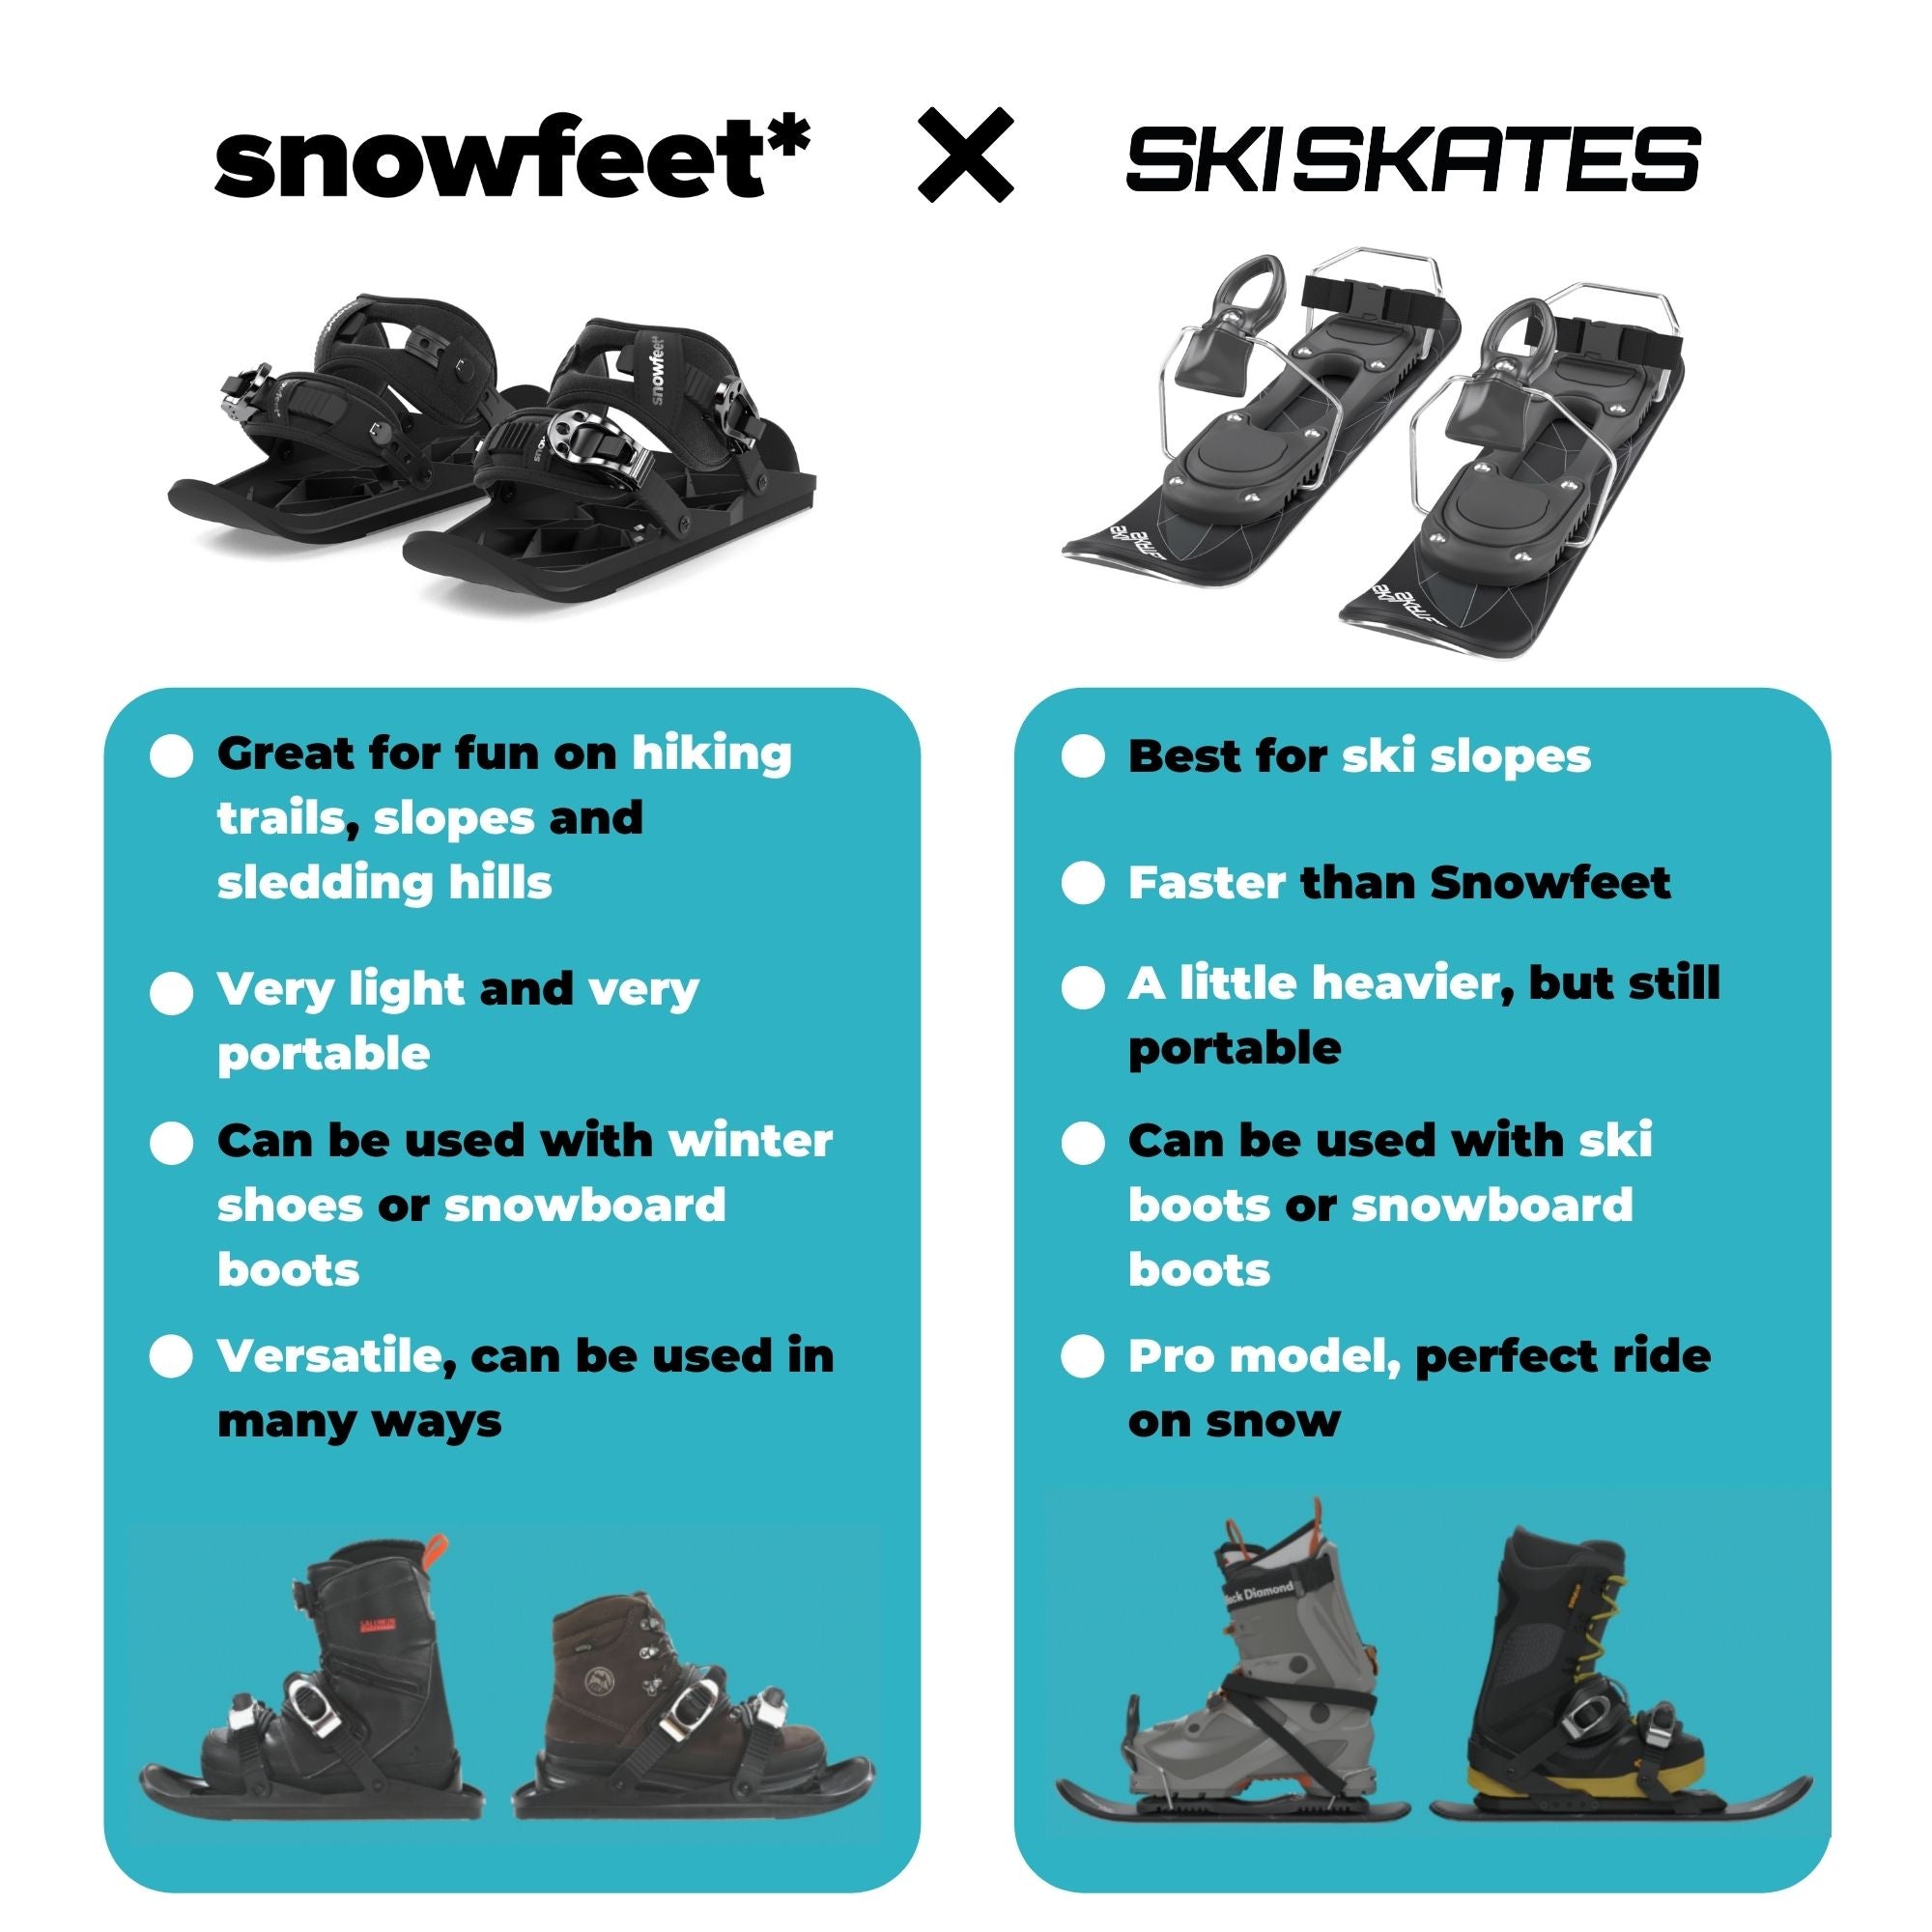 snowfeet skiskates comparison